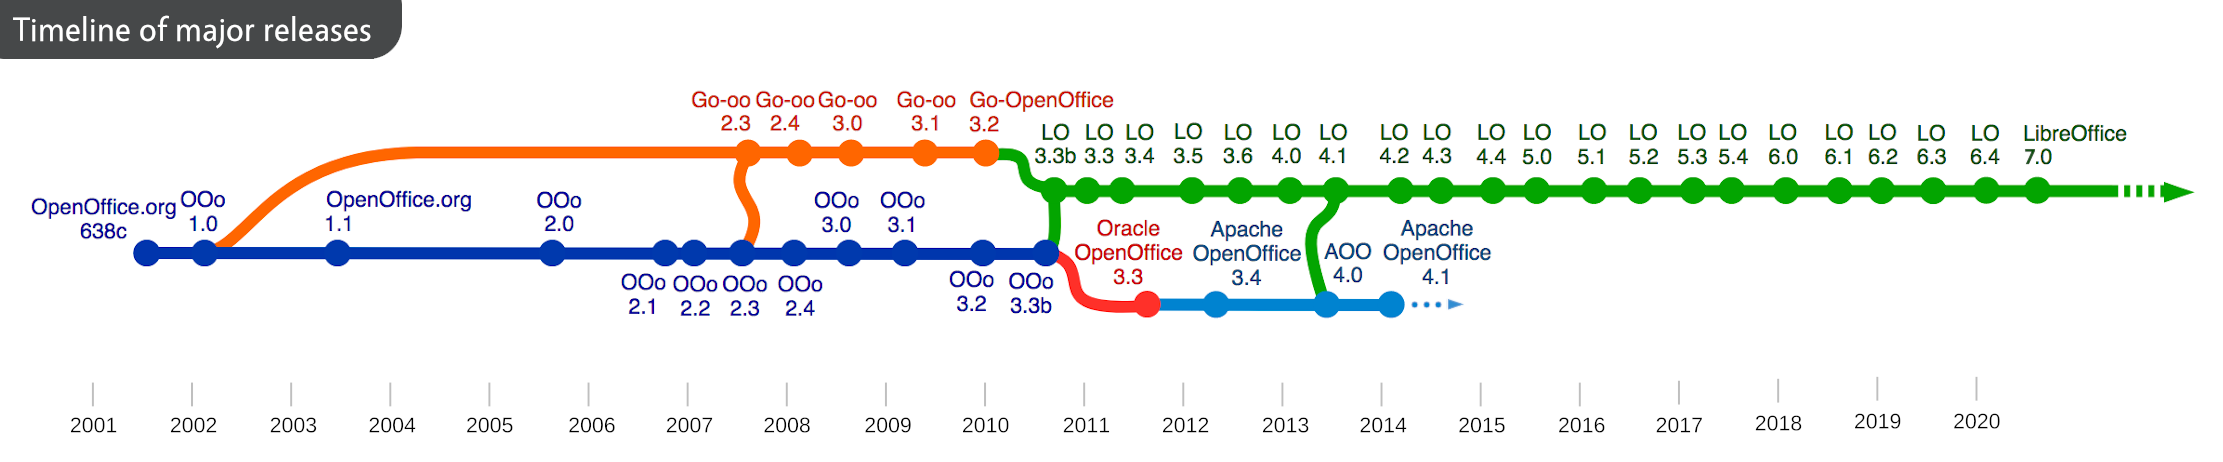 Les mises à jour majeures d'OpenOffice et LibreOffice